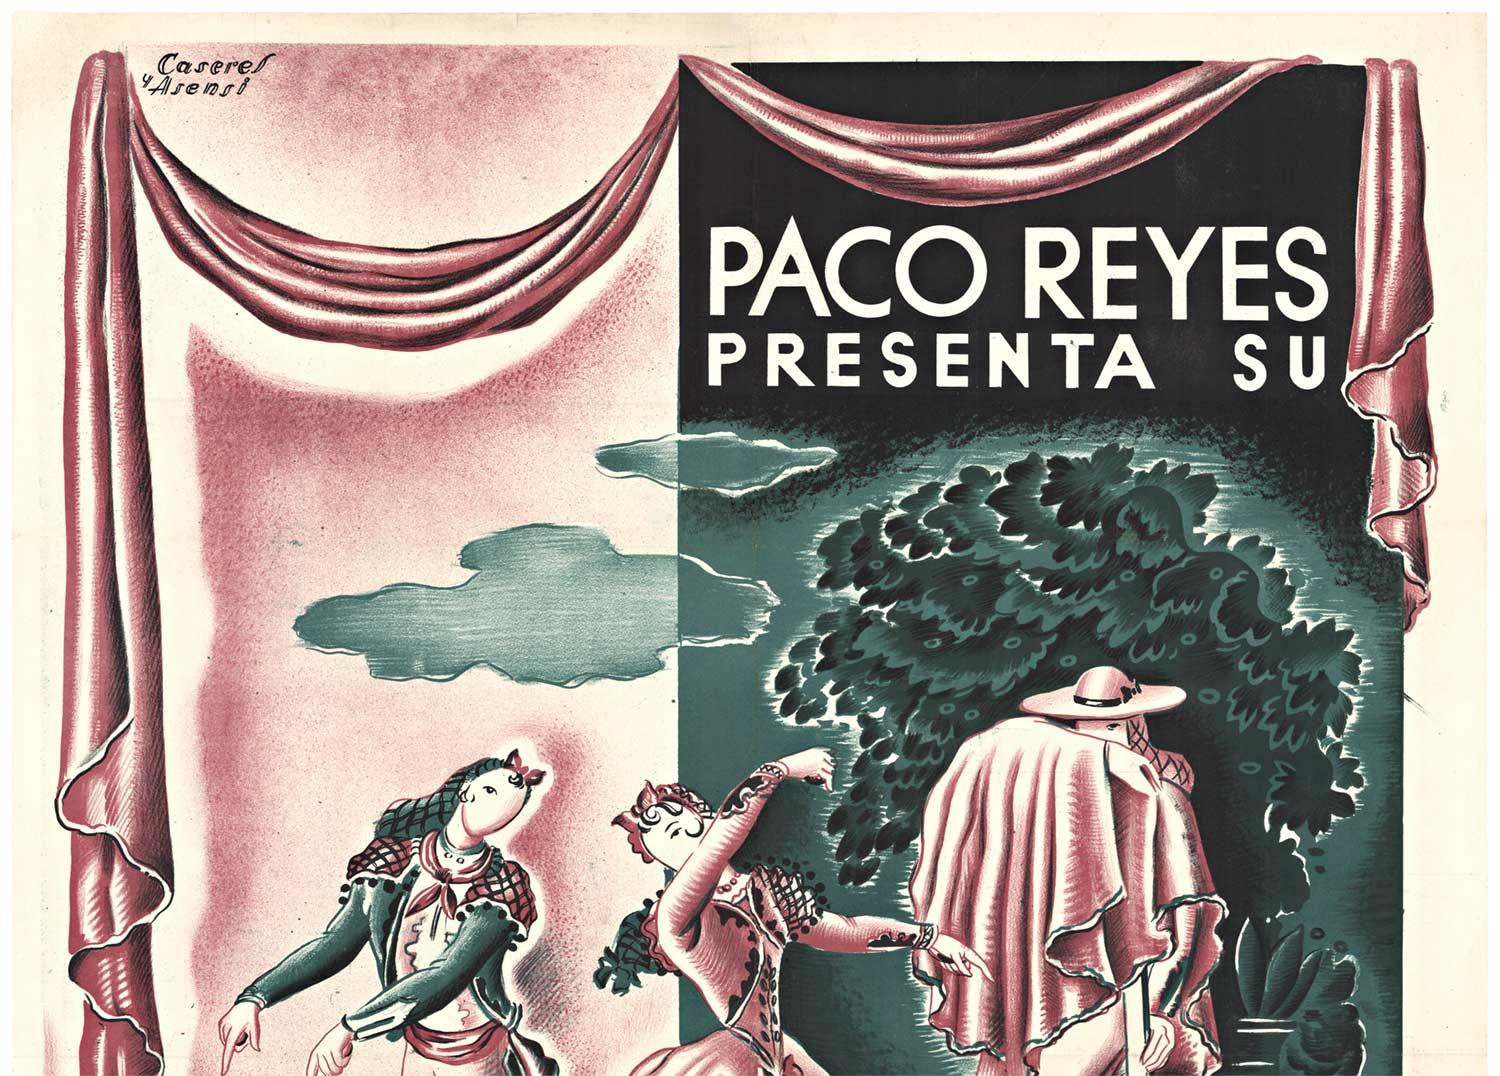 Original Paco Reyes Presenta Su Ballet Teatro con y Gloria Libran vintage poster - Print by Rafael Caseres